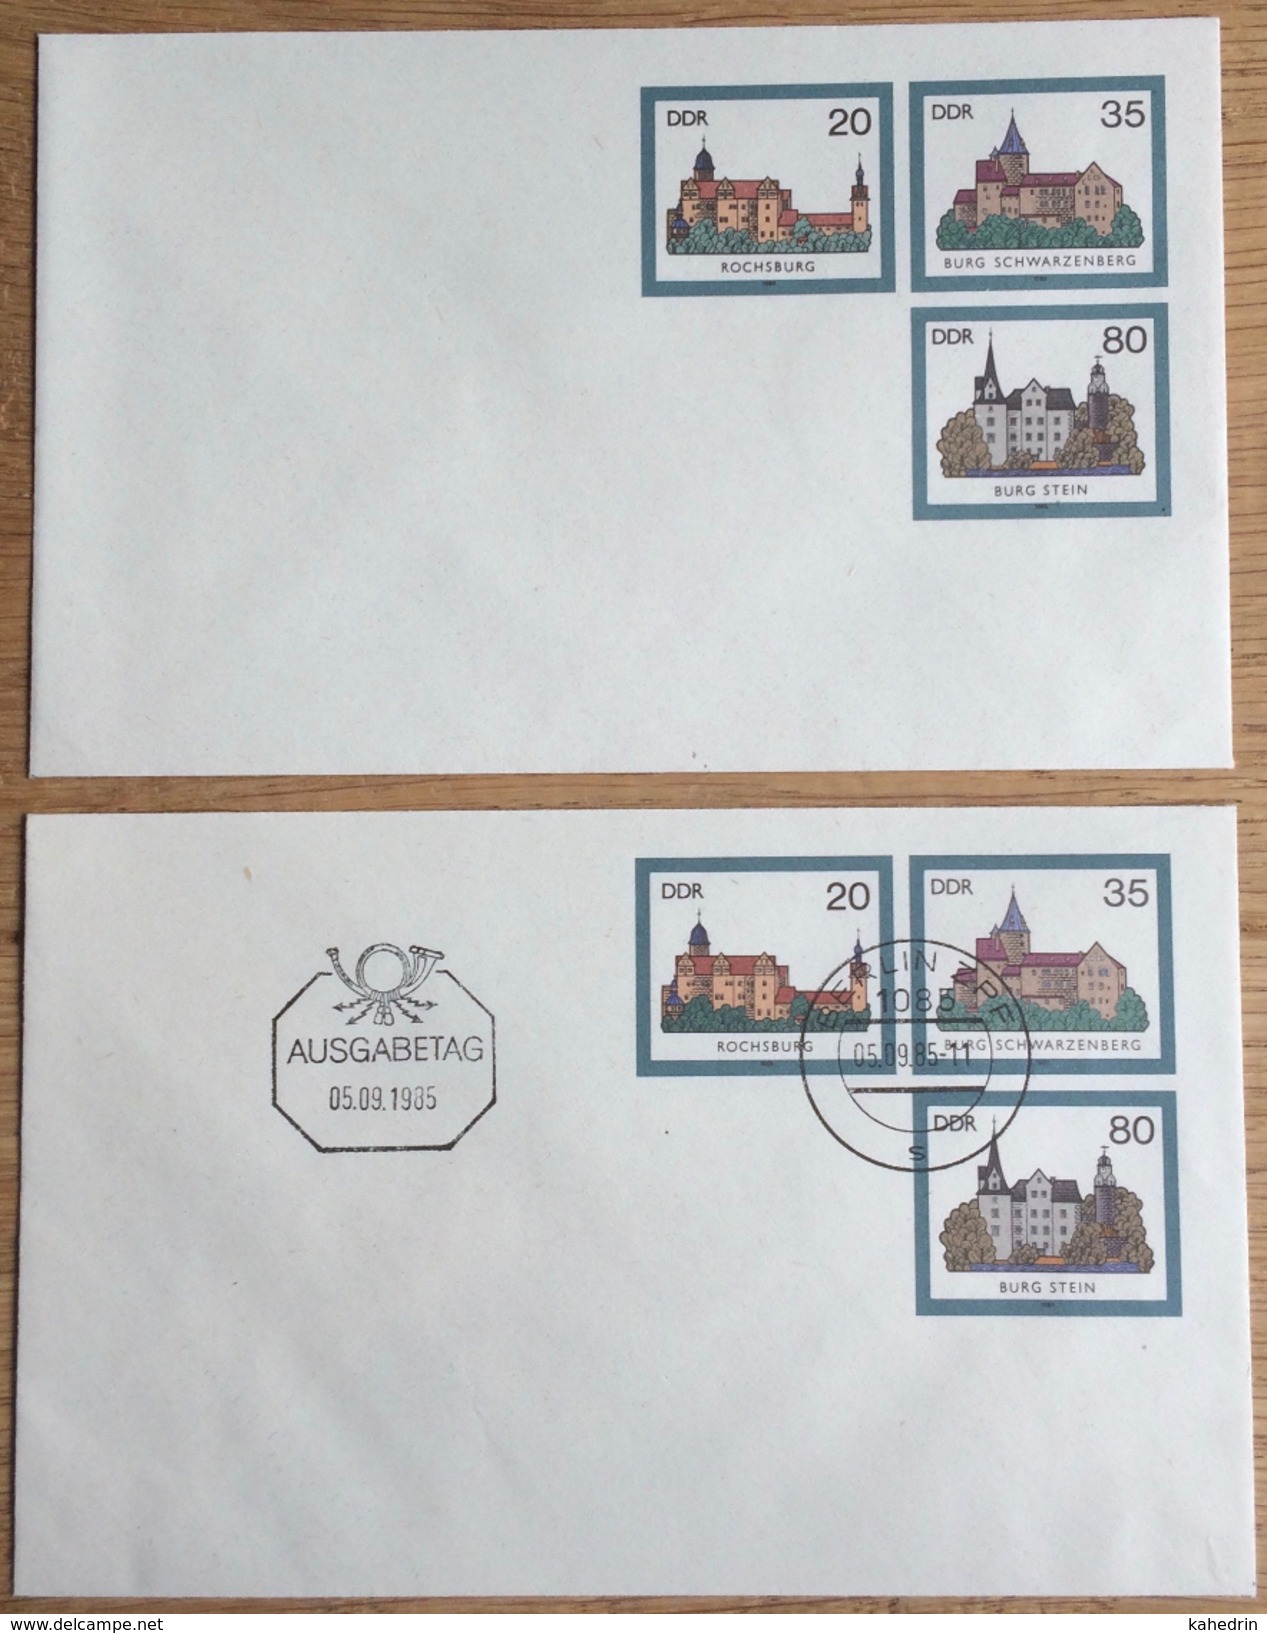 DDR 1985, Berlin ZPF 1085, 2 Covers, FDC Ausgabetag, Burg Schwarzenberg Rochsburg Stein ** / (o) - Buste - Usati